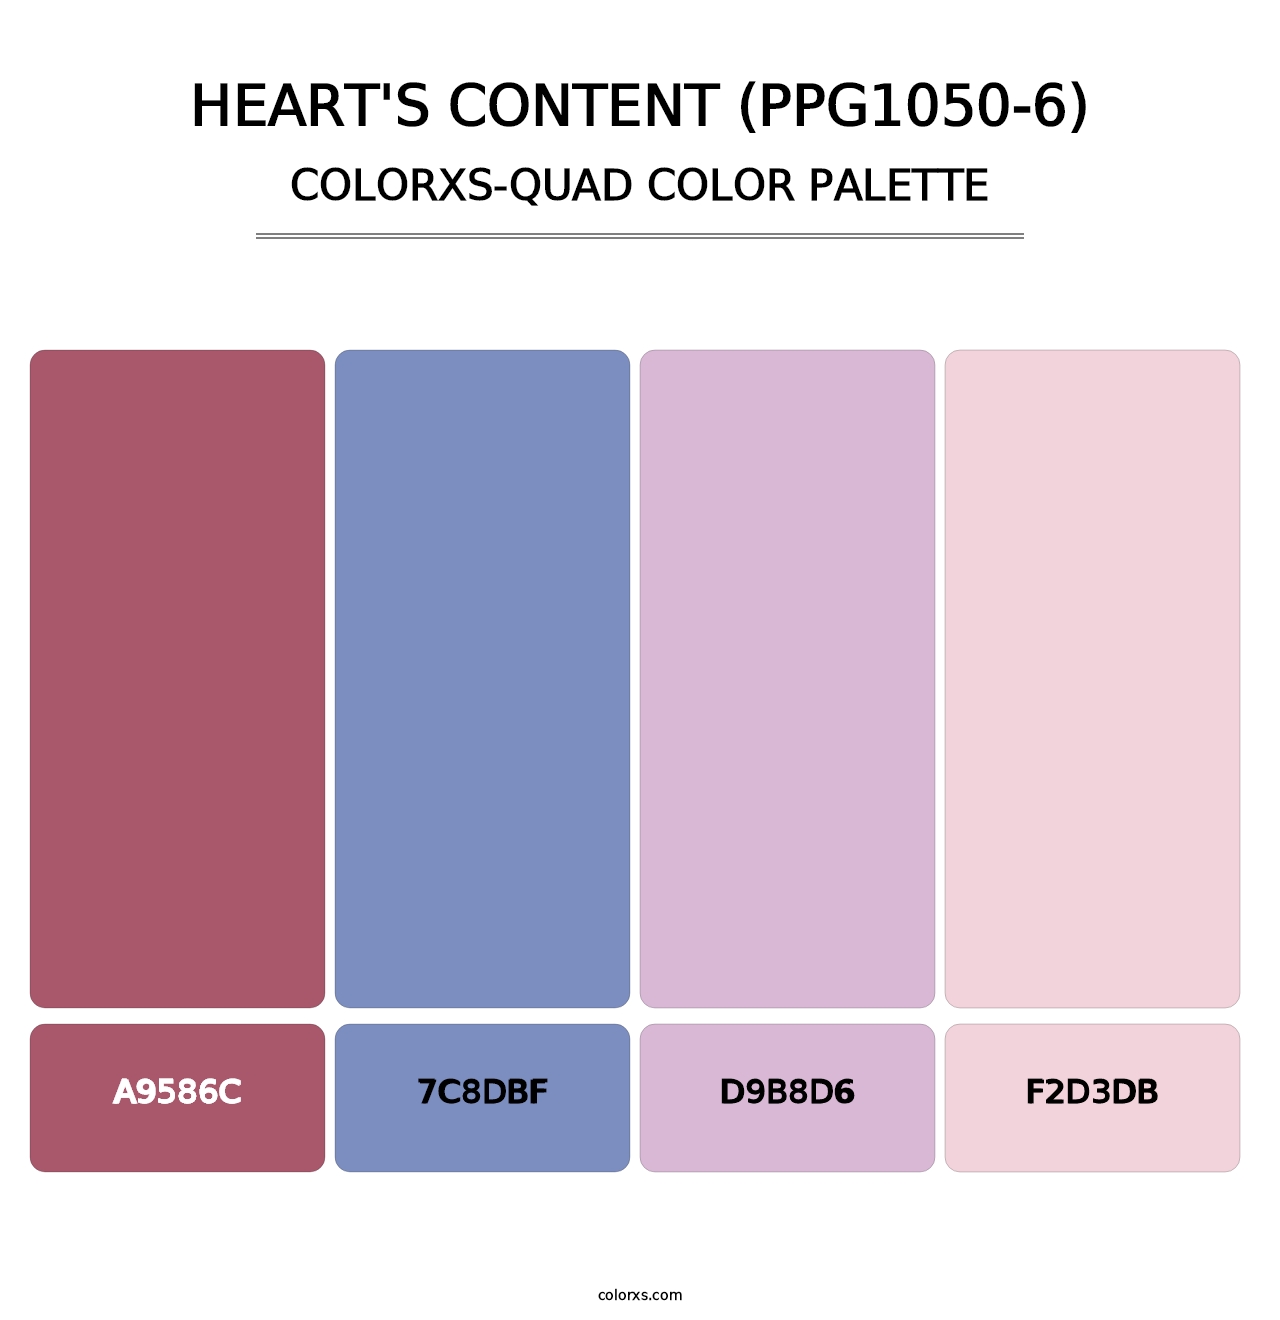 Heart's Content (PPG1050-6) - Colorxs Quad Palette